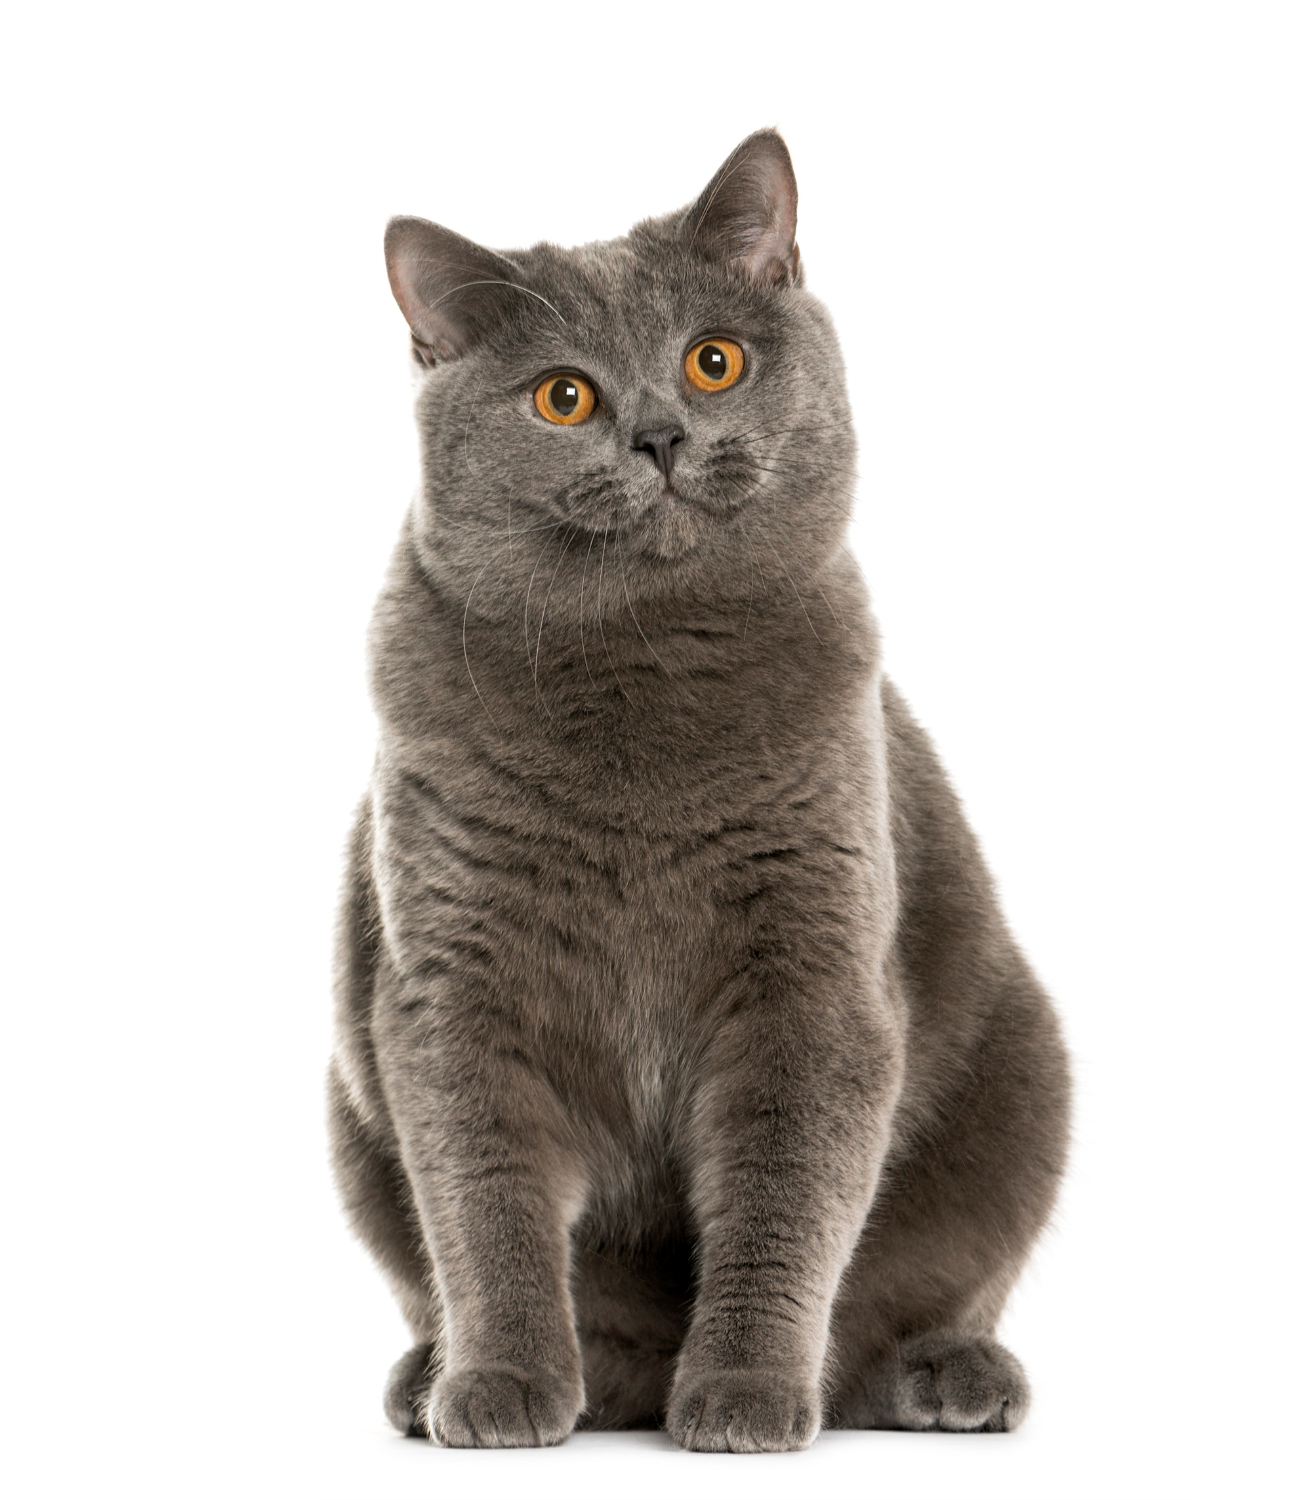 Ile powinien ważyć dorosły kot brytyjski?